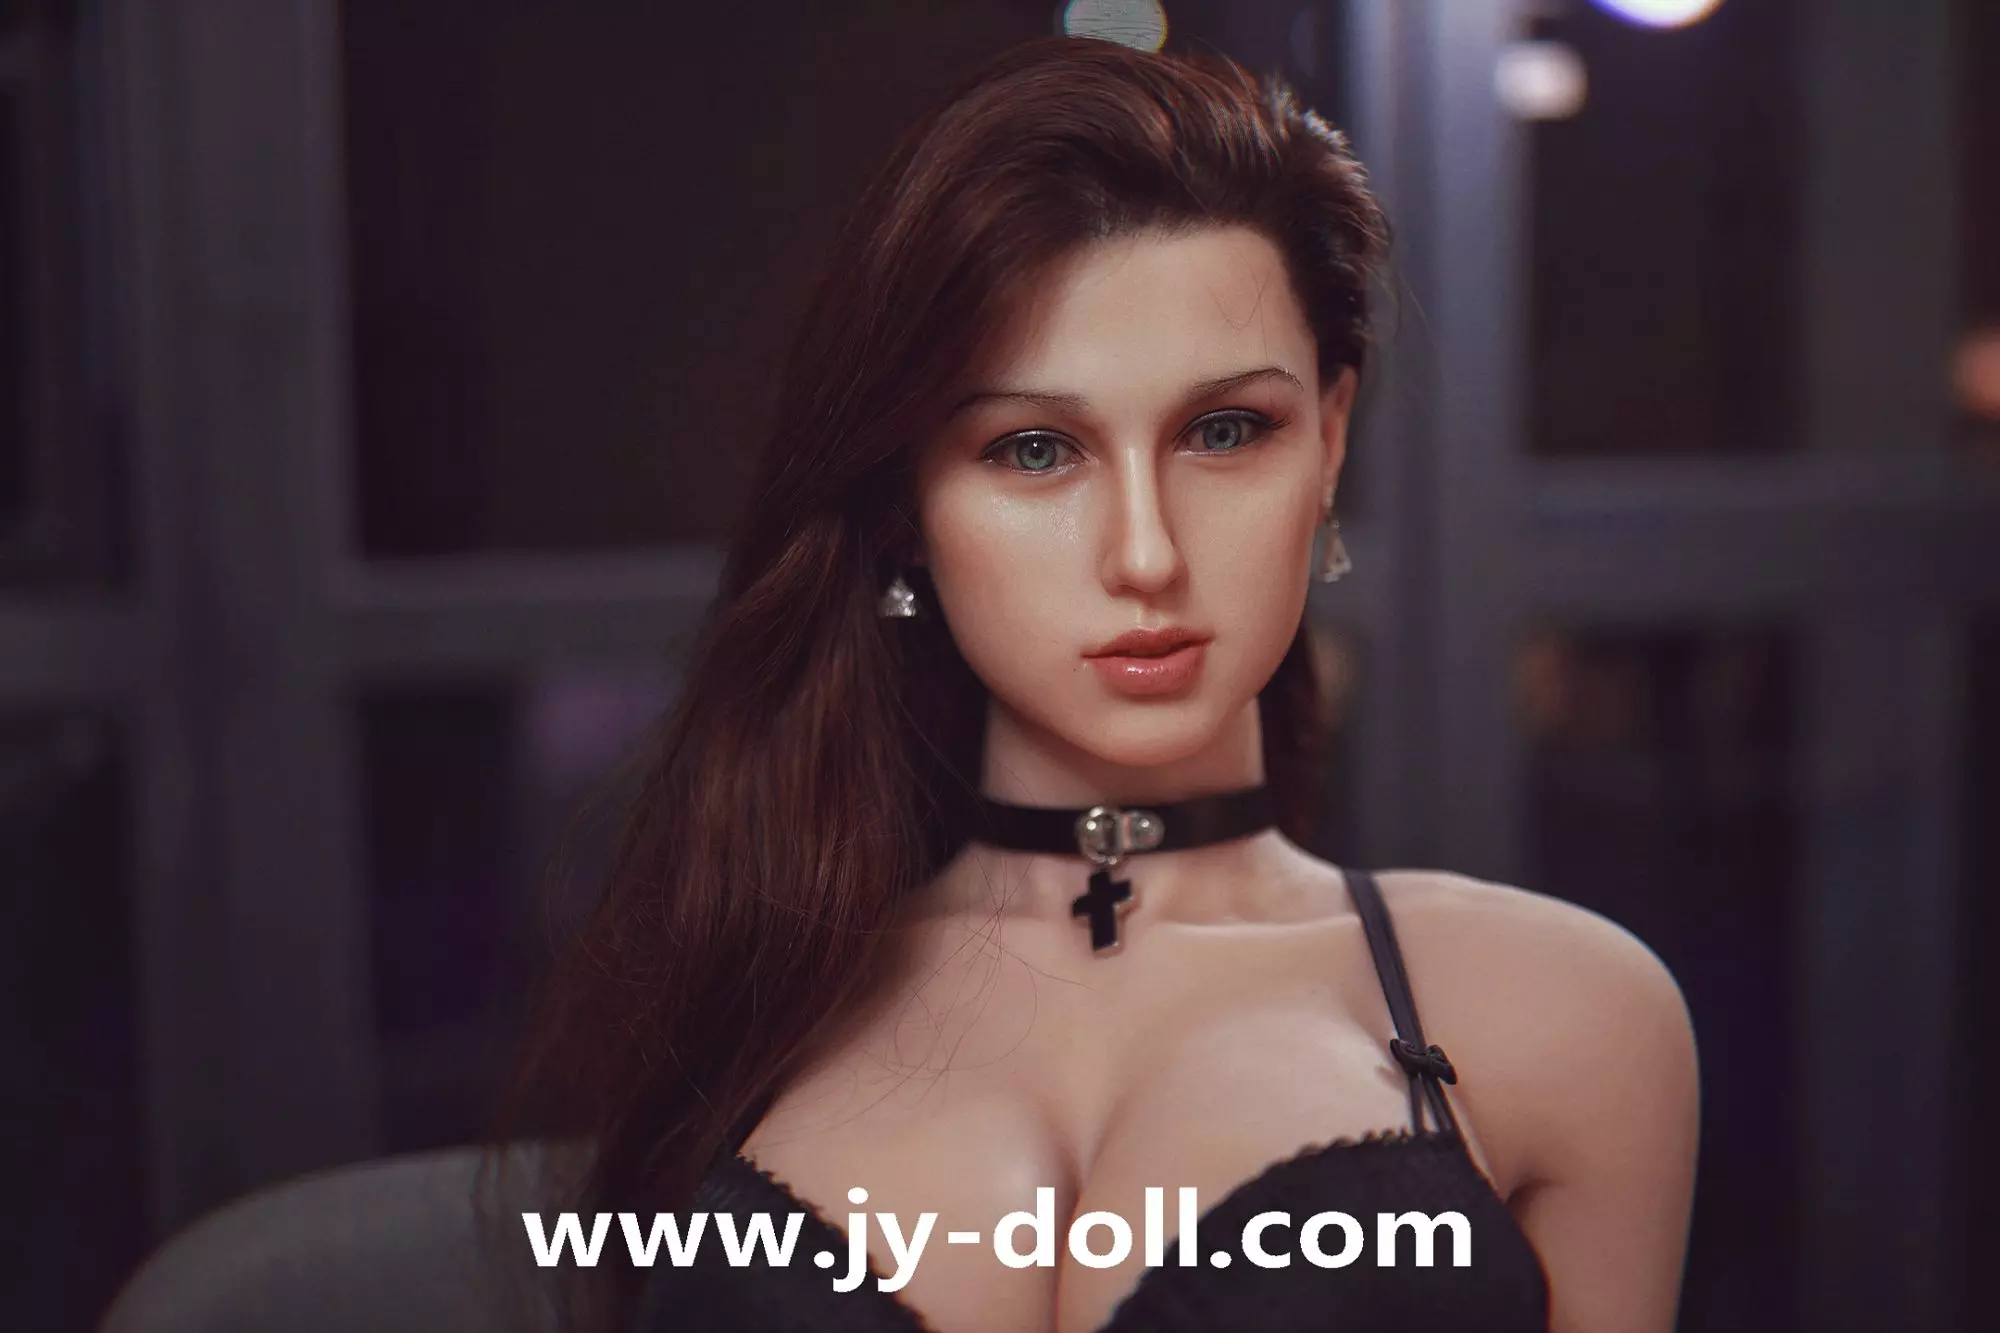 JY DOLL 164CM big boobs SEX DOLL Ivan(silicone head)